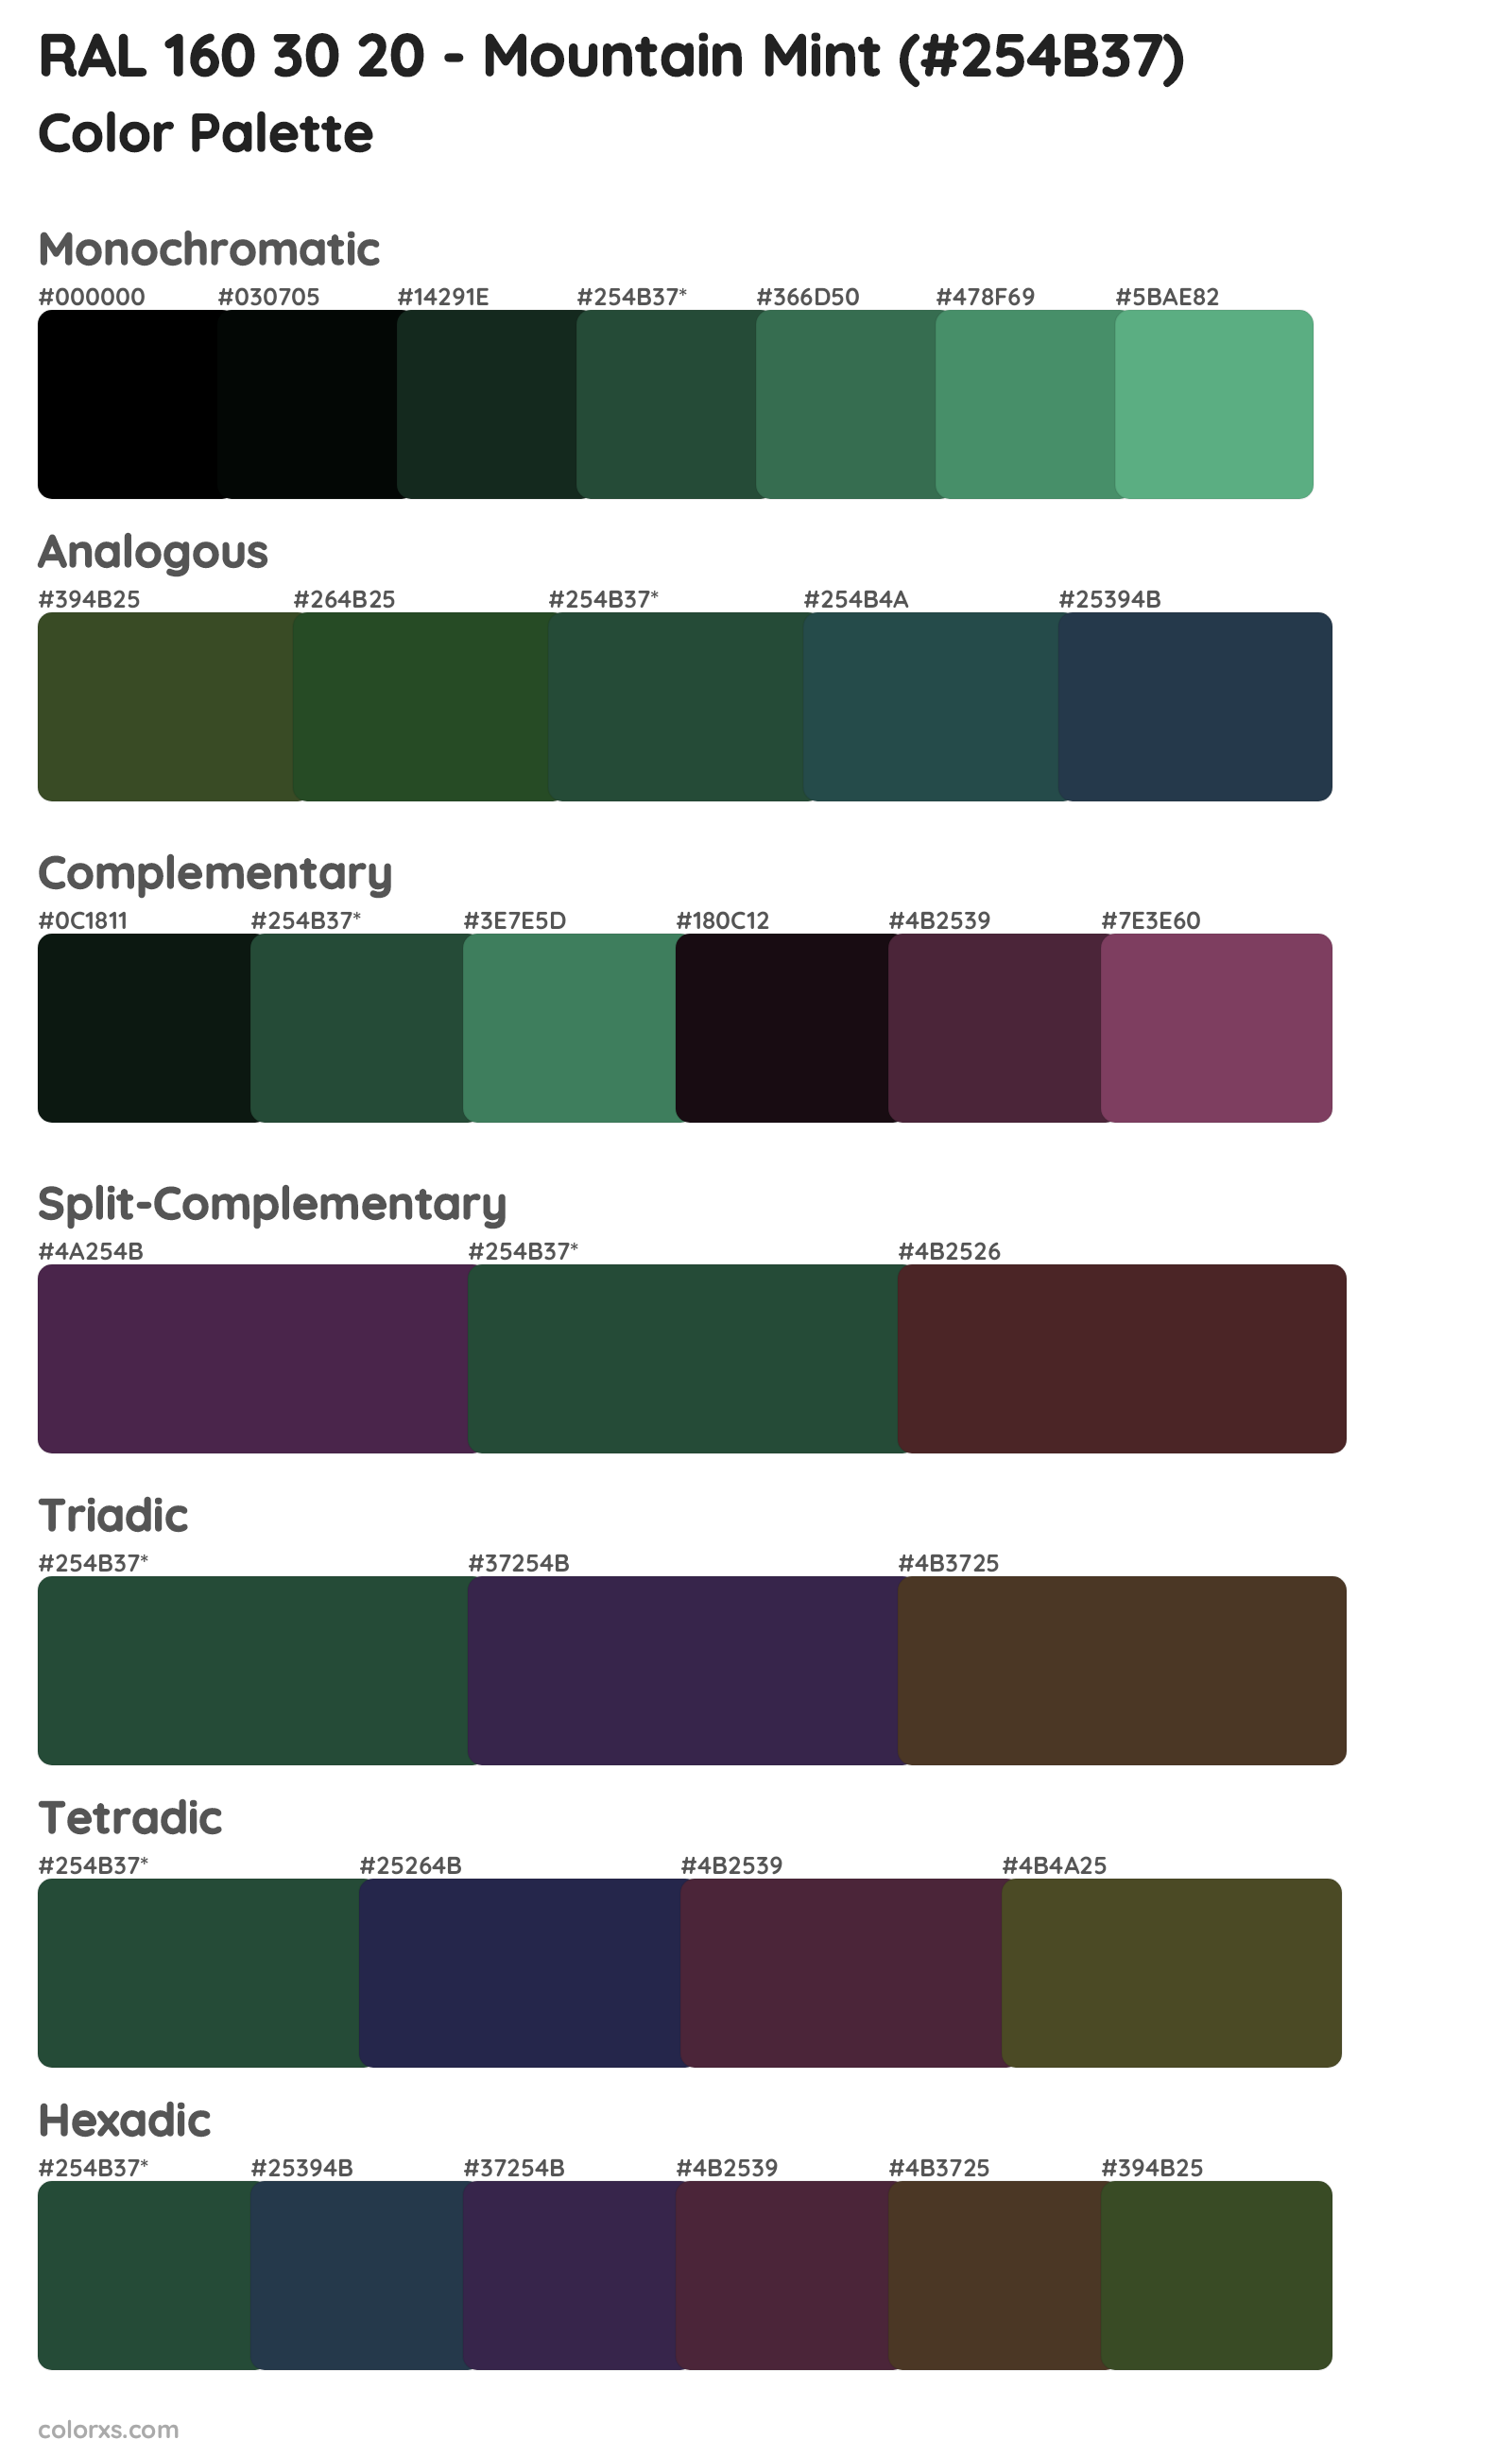 RAL 160 30 20 - Mountain Mint Color Scheme Palettes